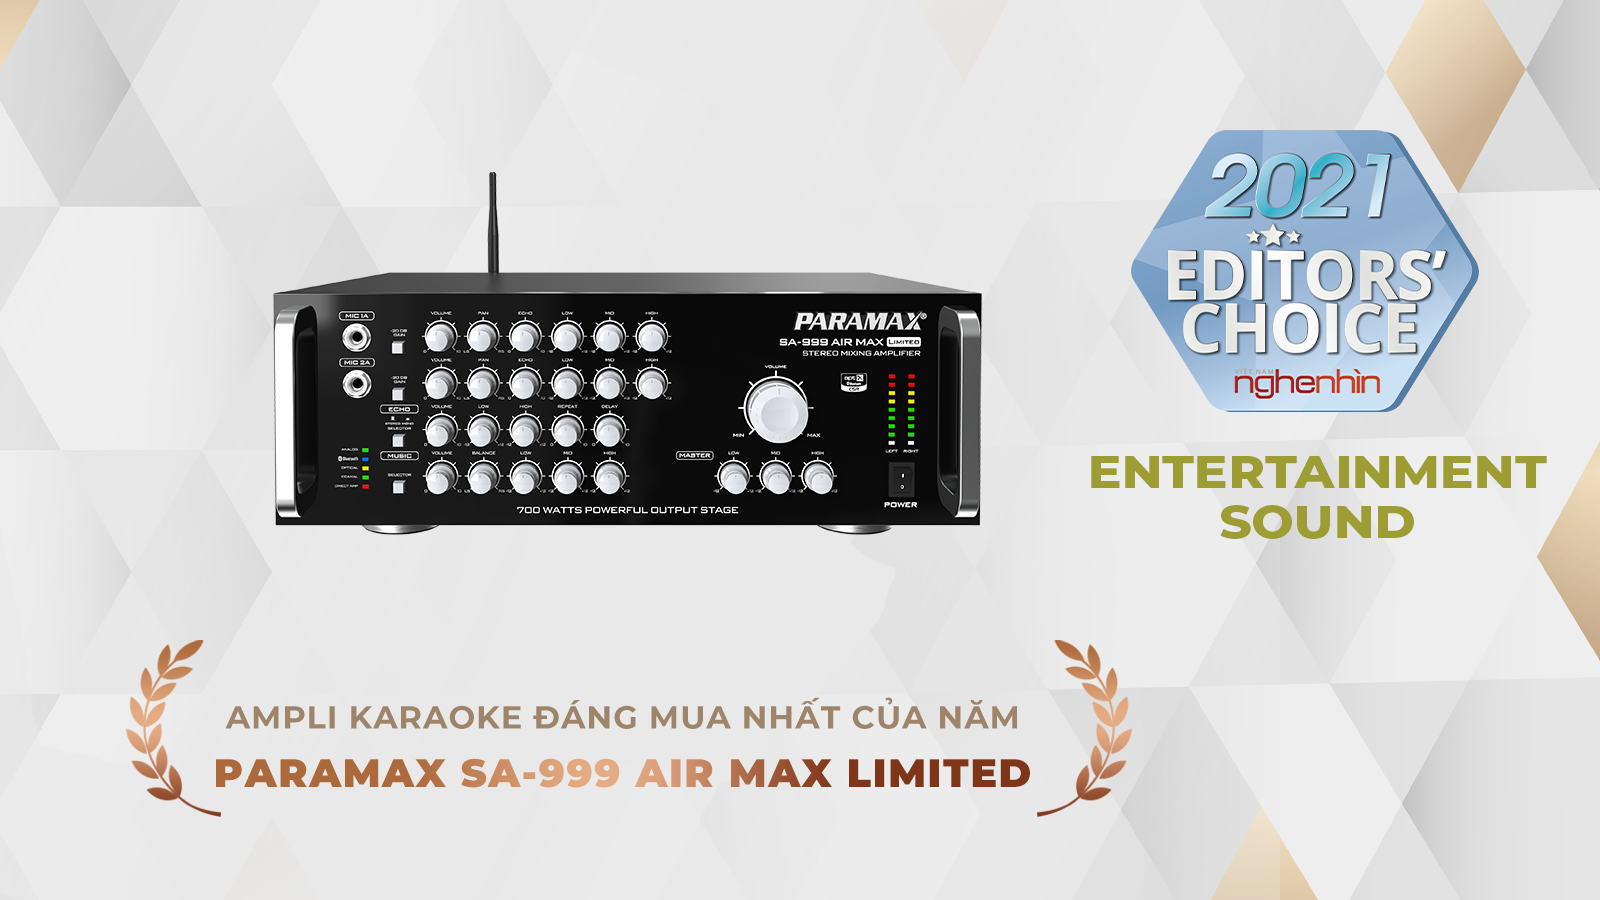 Ampli karaoke đáng mua nhất của năm SA-999 AIR MAX Limited